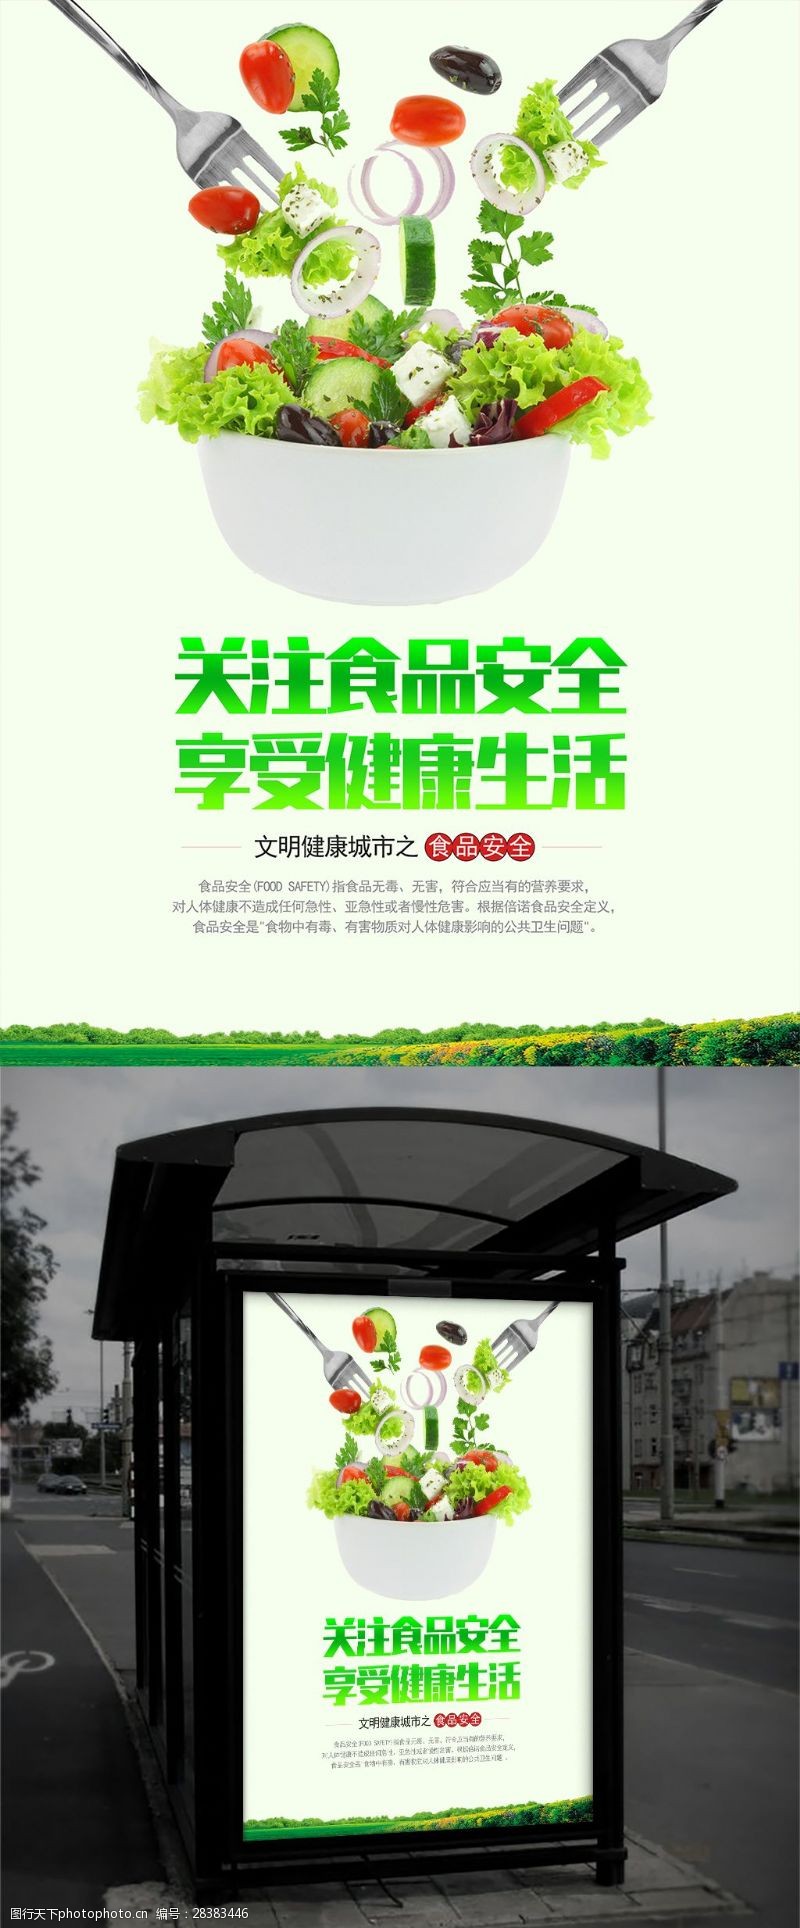 柿子质量月简约绿色食品食物安全公益海报